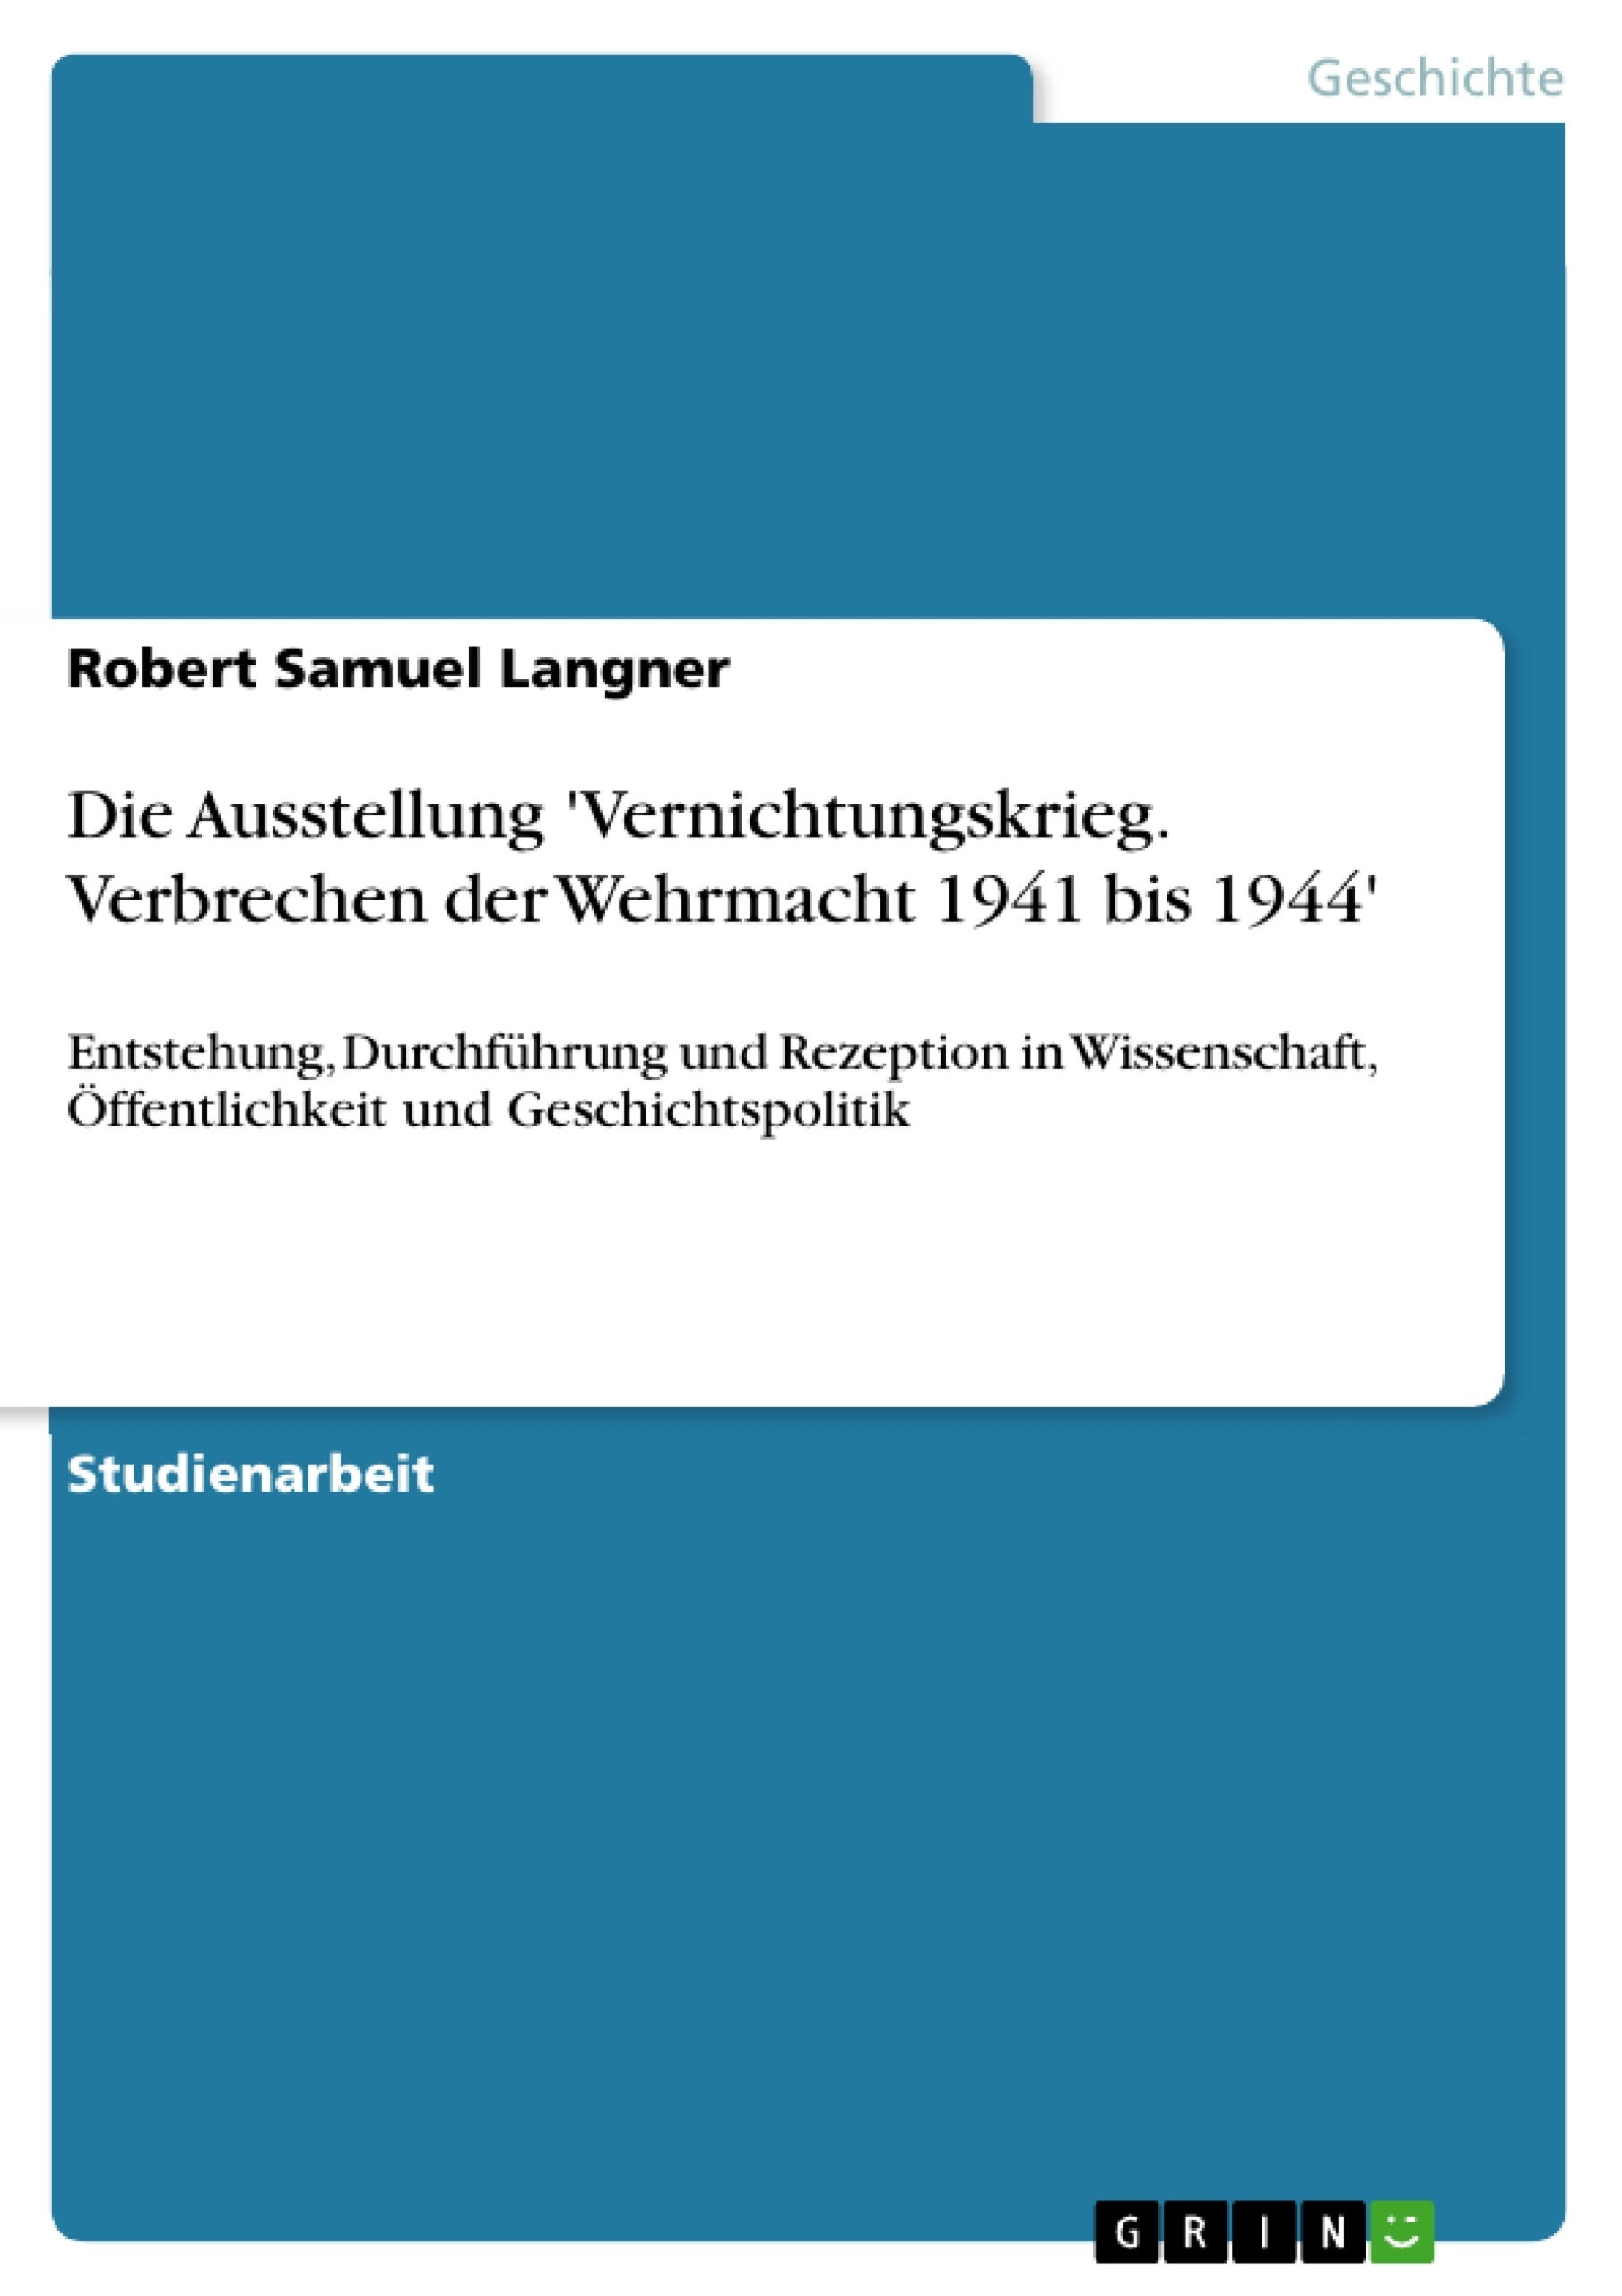 Título: Die Ausstellung 'Vernichtungskrieg. Verbrechen der Wehrmacht 1941 bis 1944'